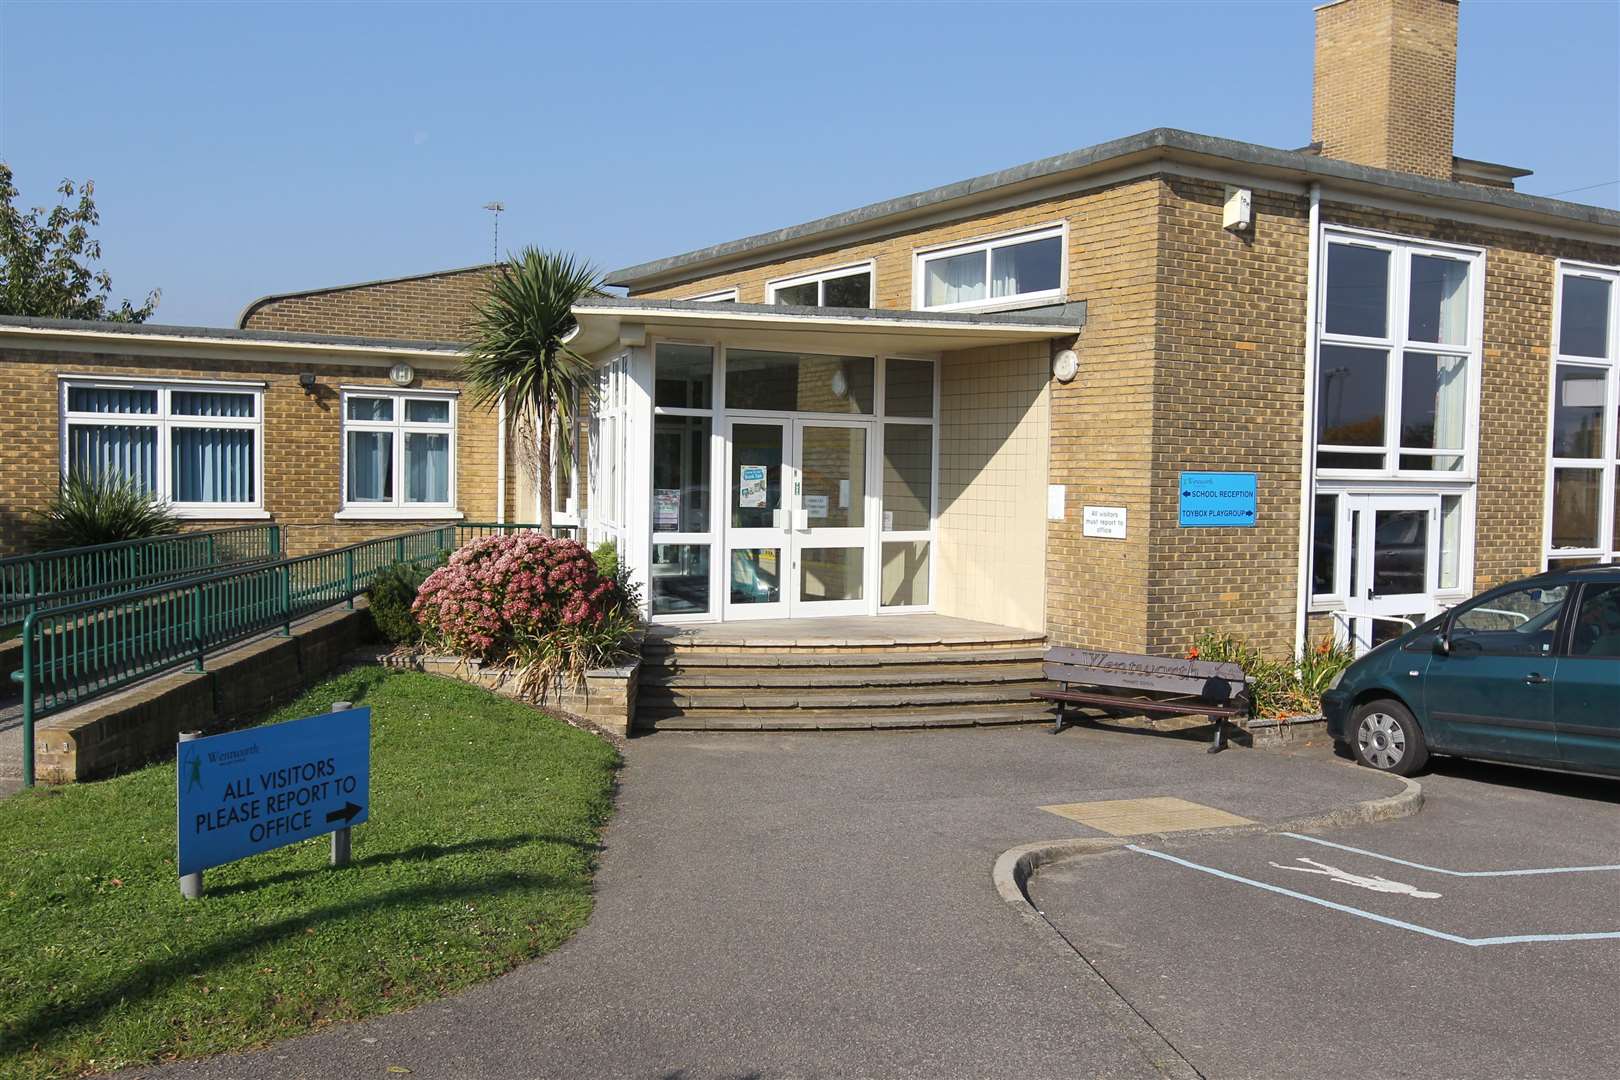 Wentworth Primary School in Dartford. Picture: John Westhrop